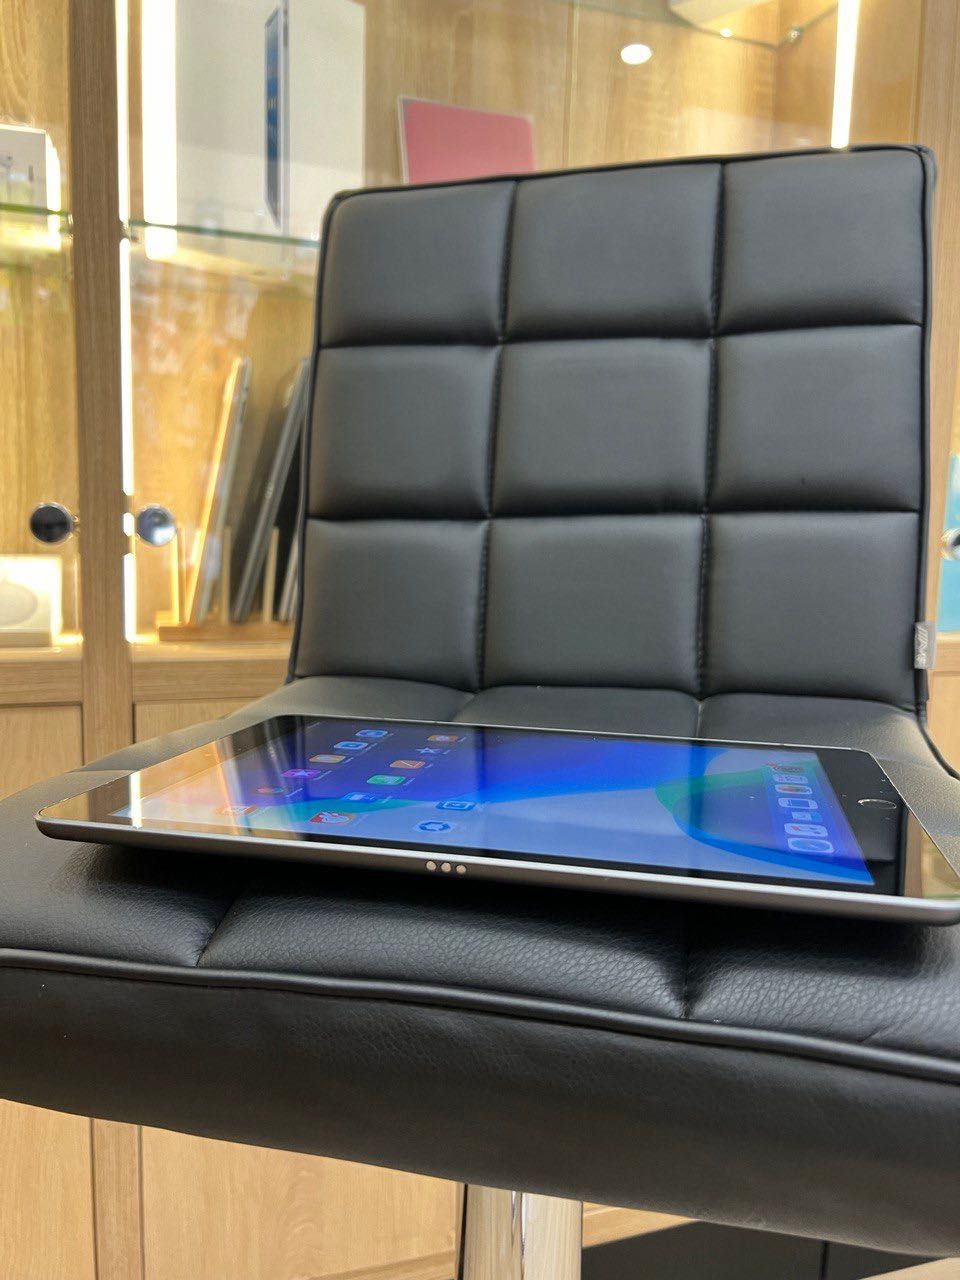 iPad 7 32gb 2019 рік WIFI 10.2 2019 Space Gray планшет з гарантією